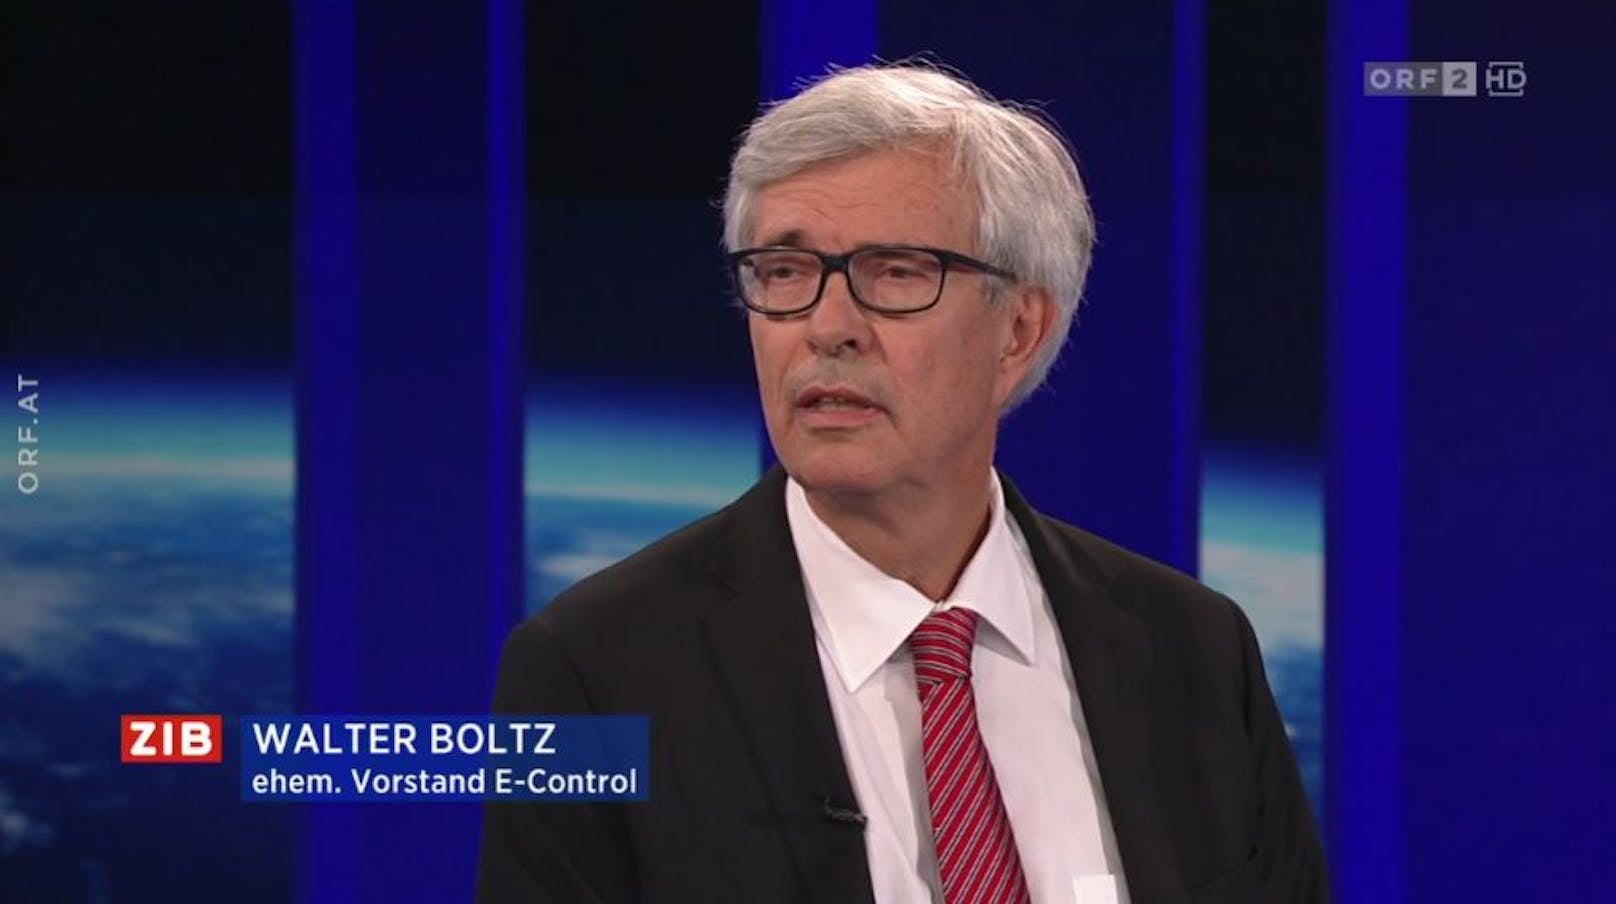 Ex-E-Control-Vorstand Walter Boltz in der ZIB2 mit Armin Wolf am 31. August 2022.